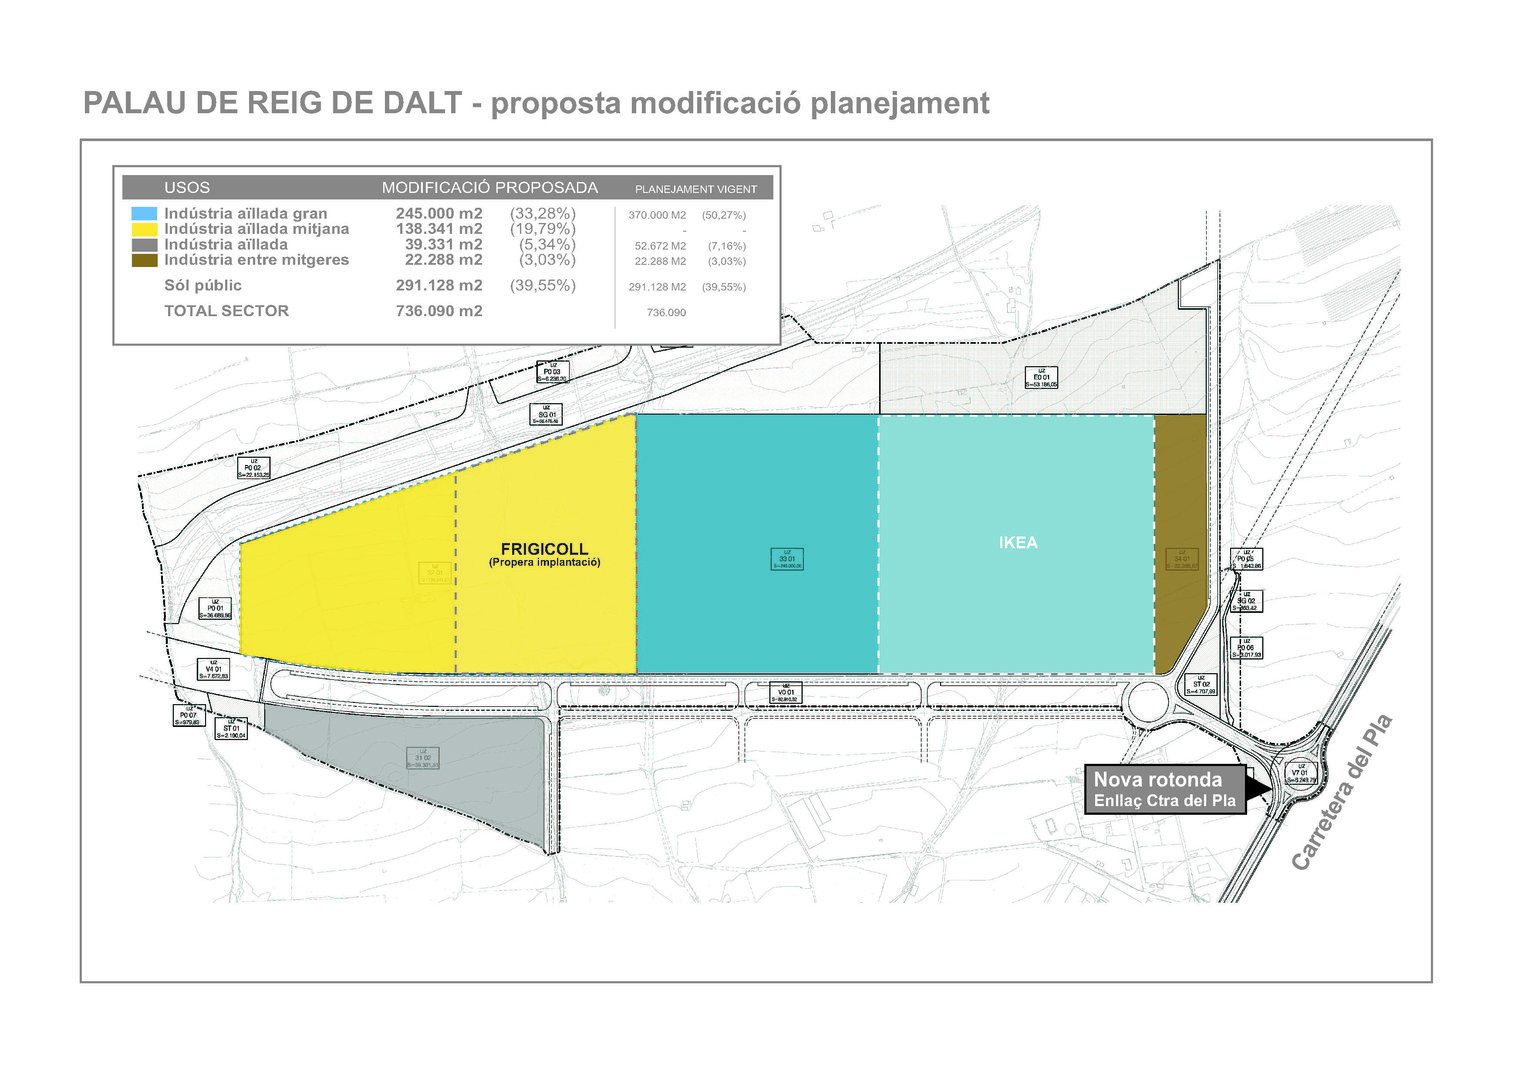 Modificació de planejament de Palau de Reig de Dalt del polígon industrial